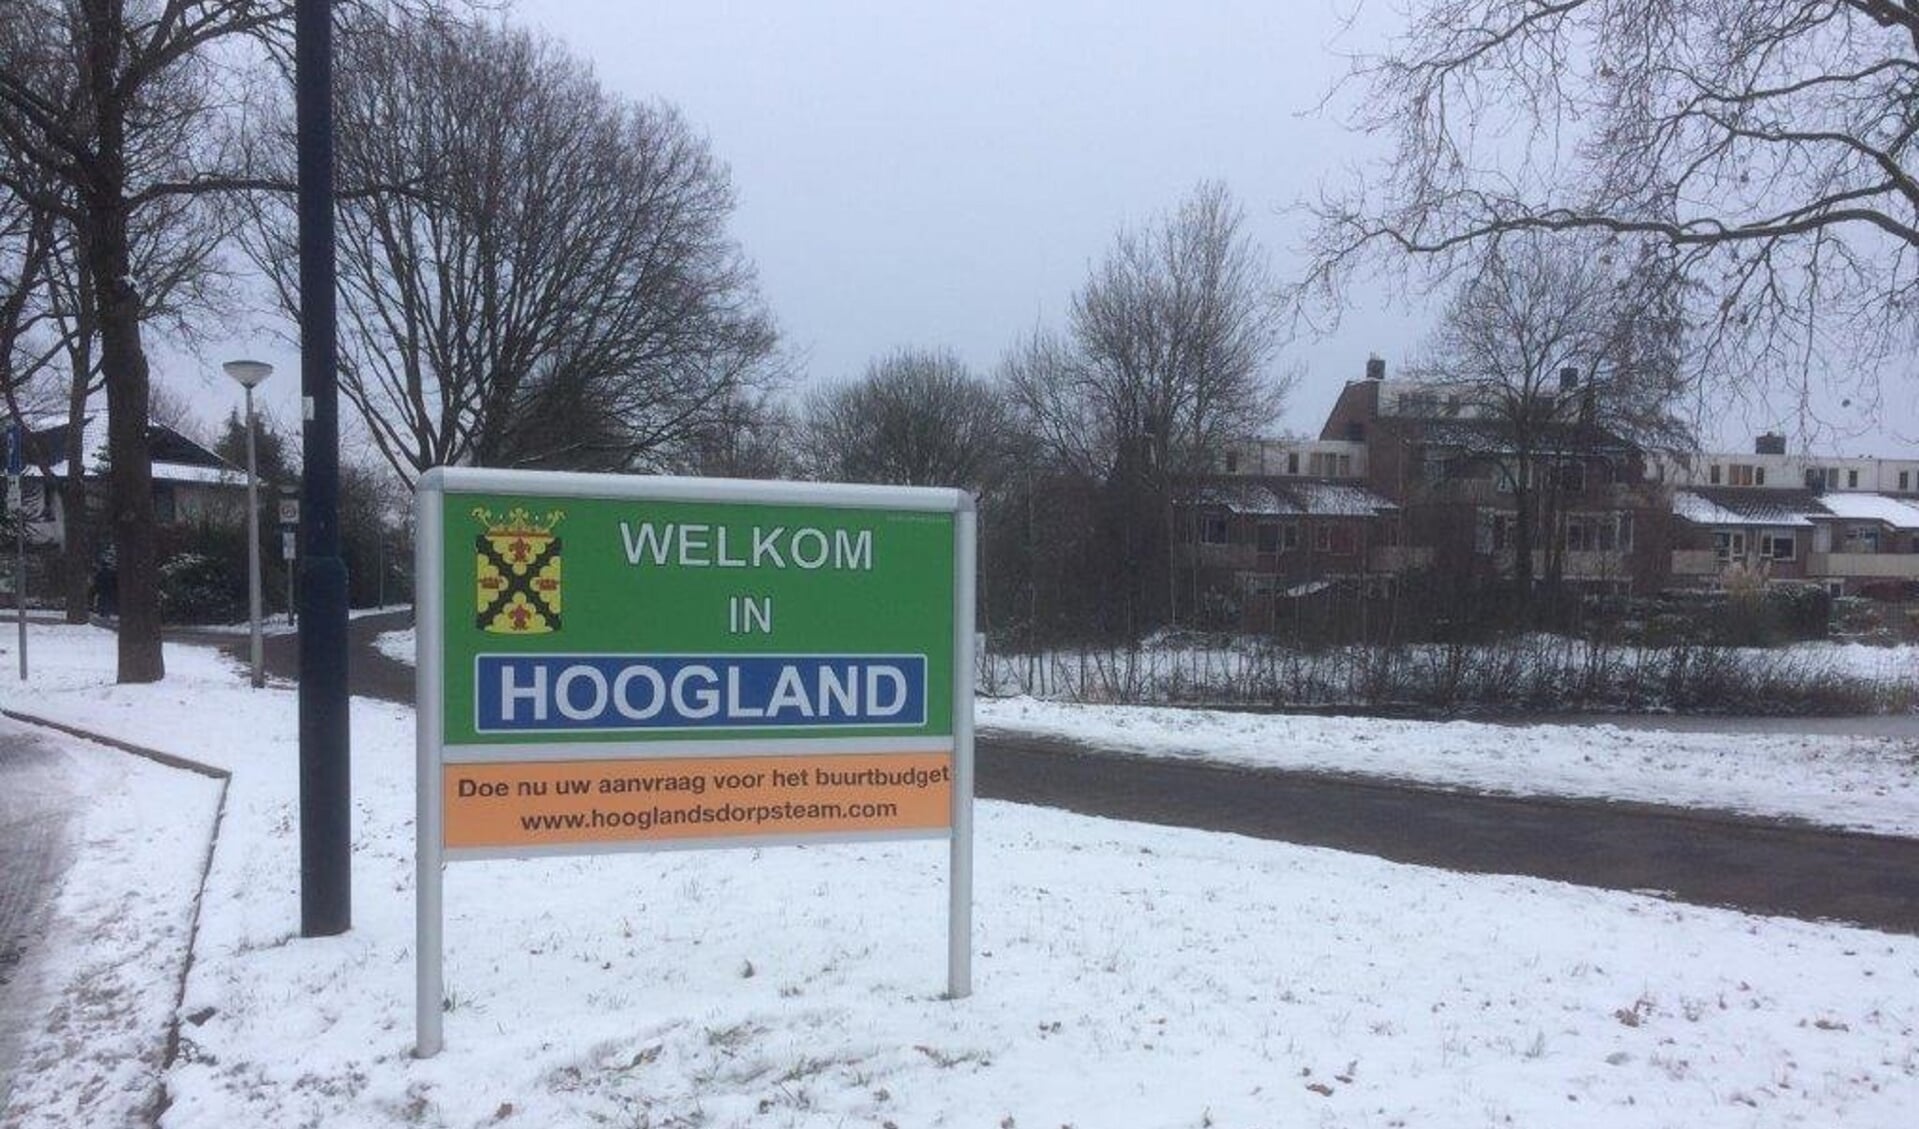 Welkom in Hoogland met de oproep voor het Buurtbudget